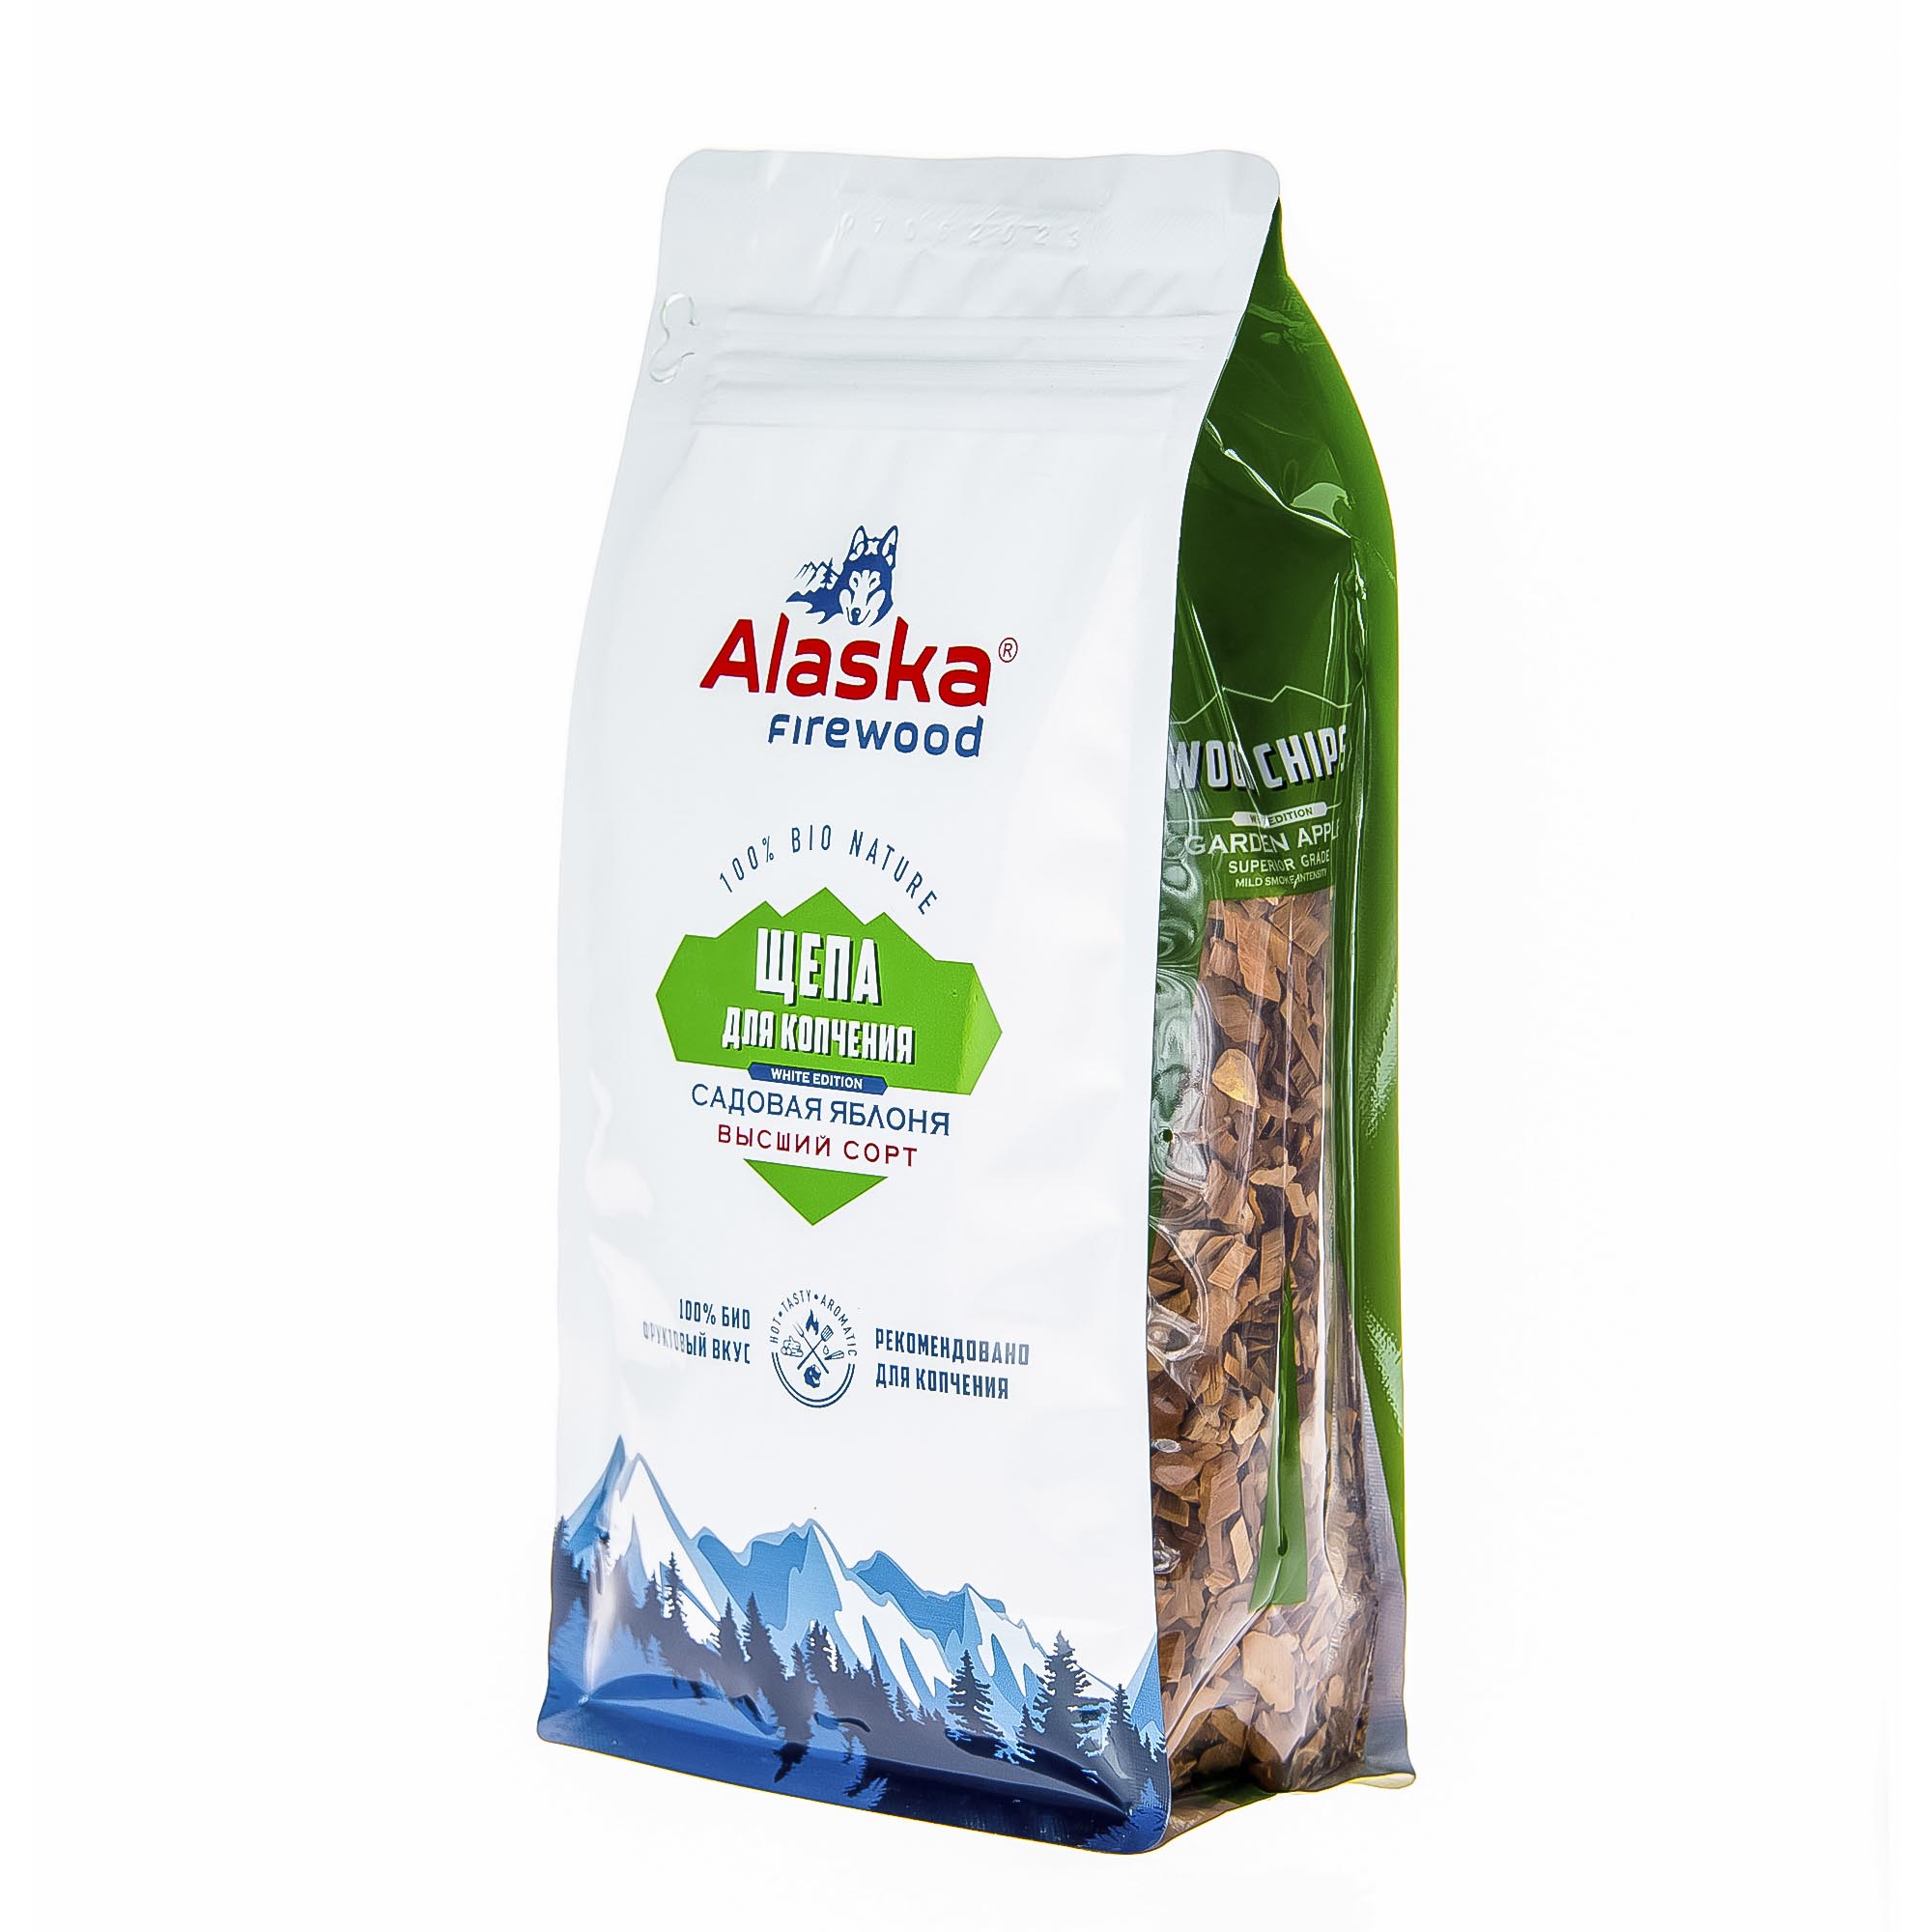 Щепа для копчения Alaska firewood яблоко 300 г уголь березовый alaska firewood 1 8кг eco